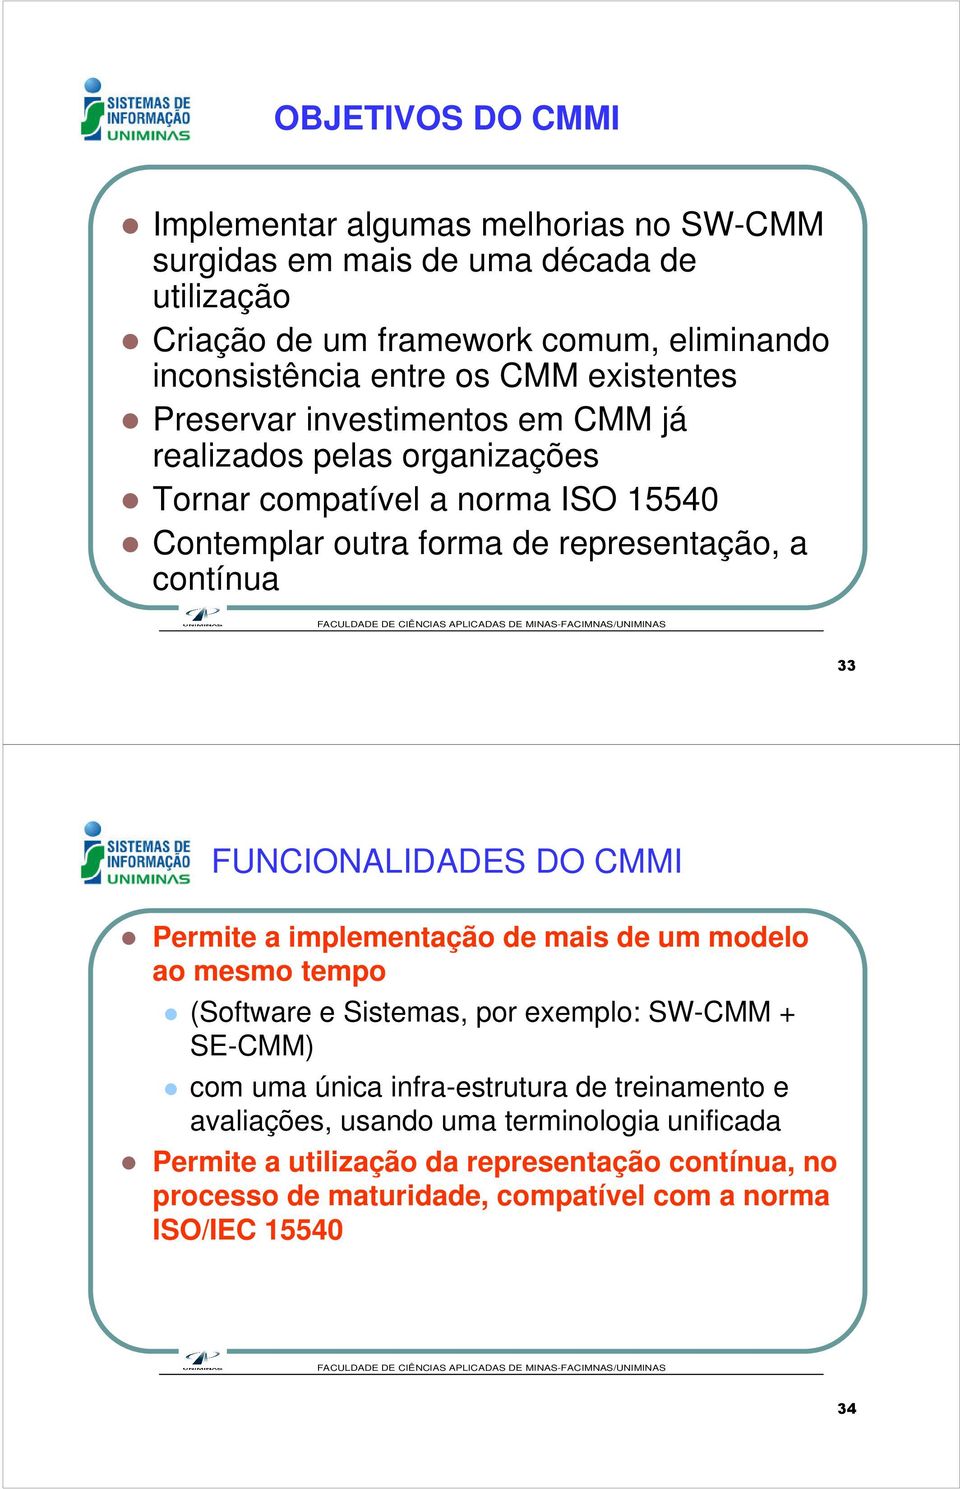 FUNCIONALIDADES DO CMMI Permite a implementação de mais de um modelo ao mesmo tempo (Software e Sistemas, por exemplo: SW-CMM + SE-CMM) com uma única infra-estrutura de